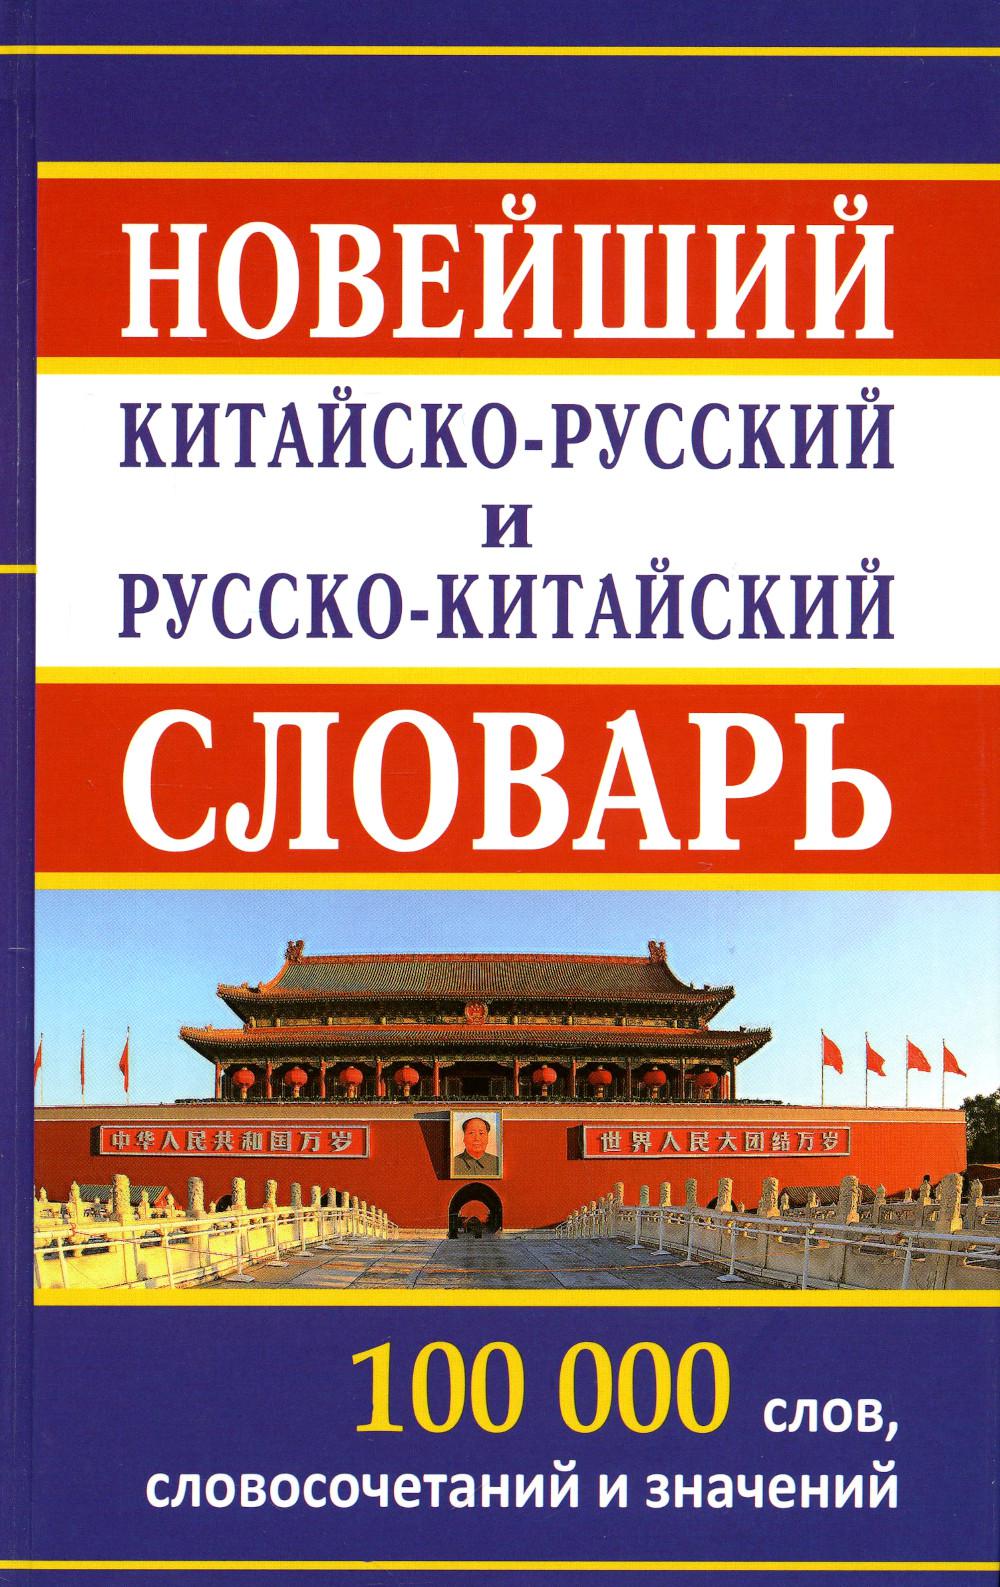 Новейший китайско-русский русско-китайский словарь 100 000 слов, словосочетаний и значений